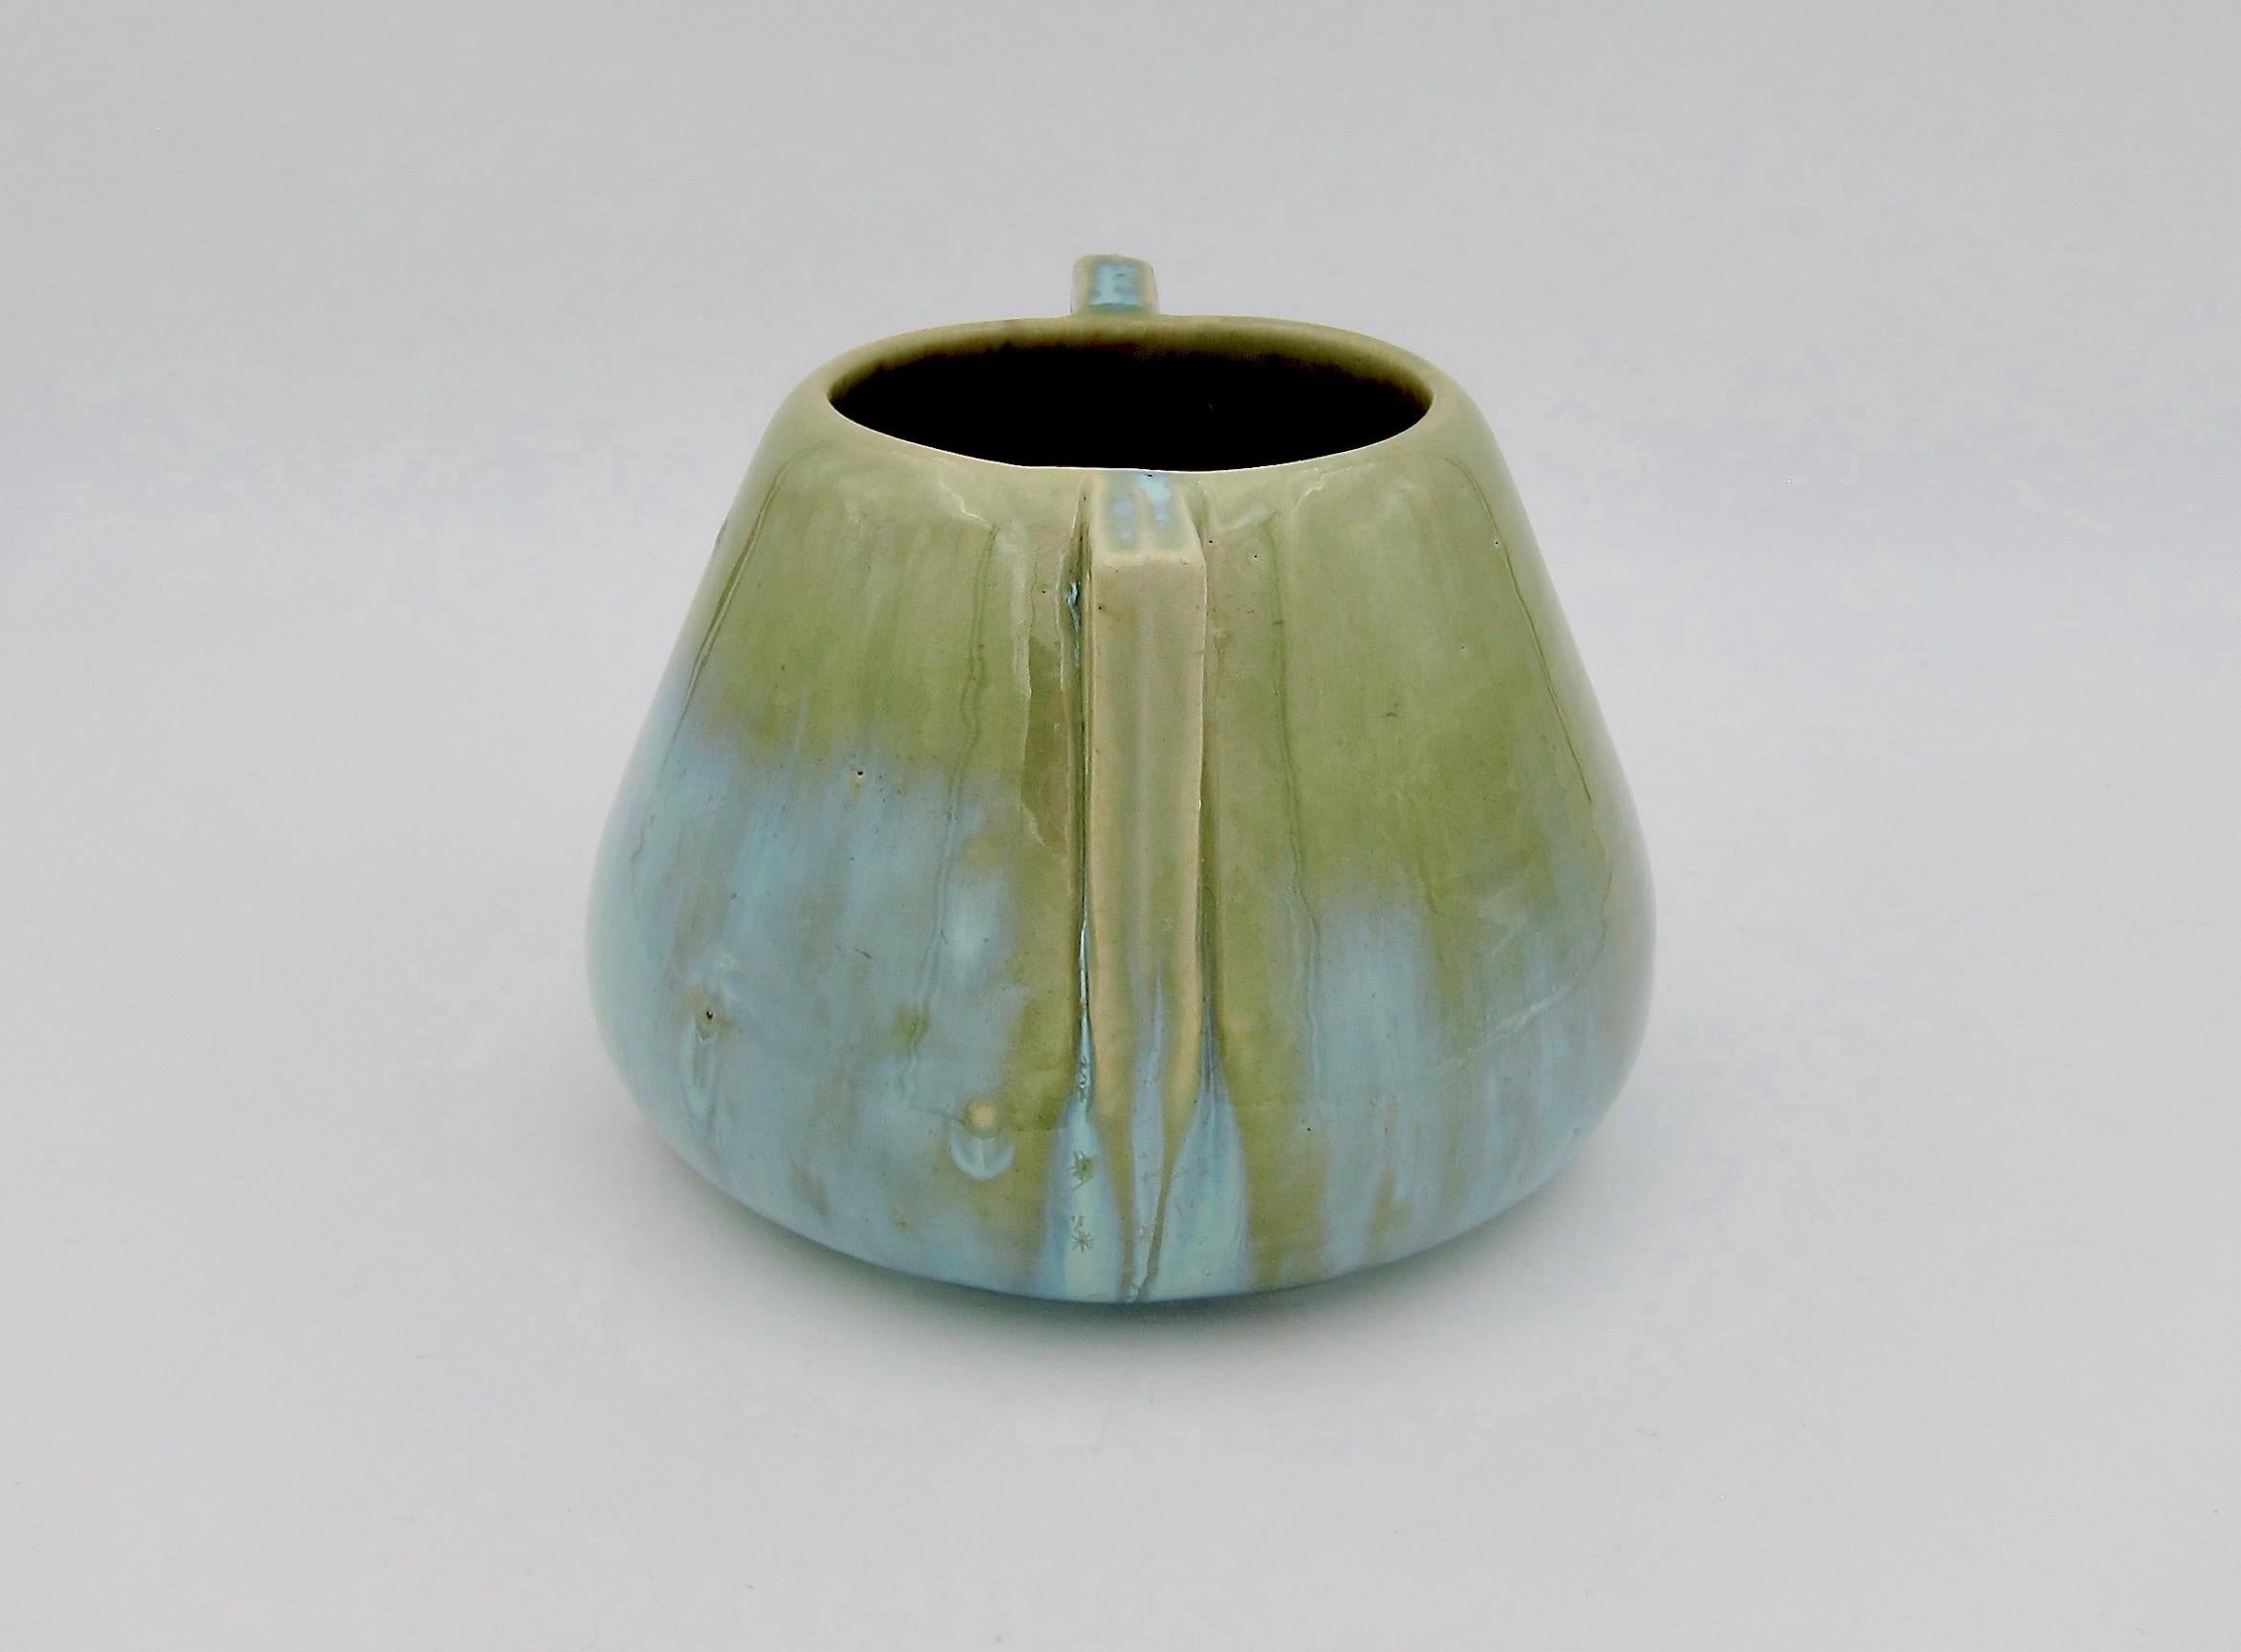 Glazed Vintage Fulper Pottery Double Handled Vase with a Green Flambé Glaze